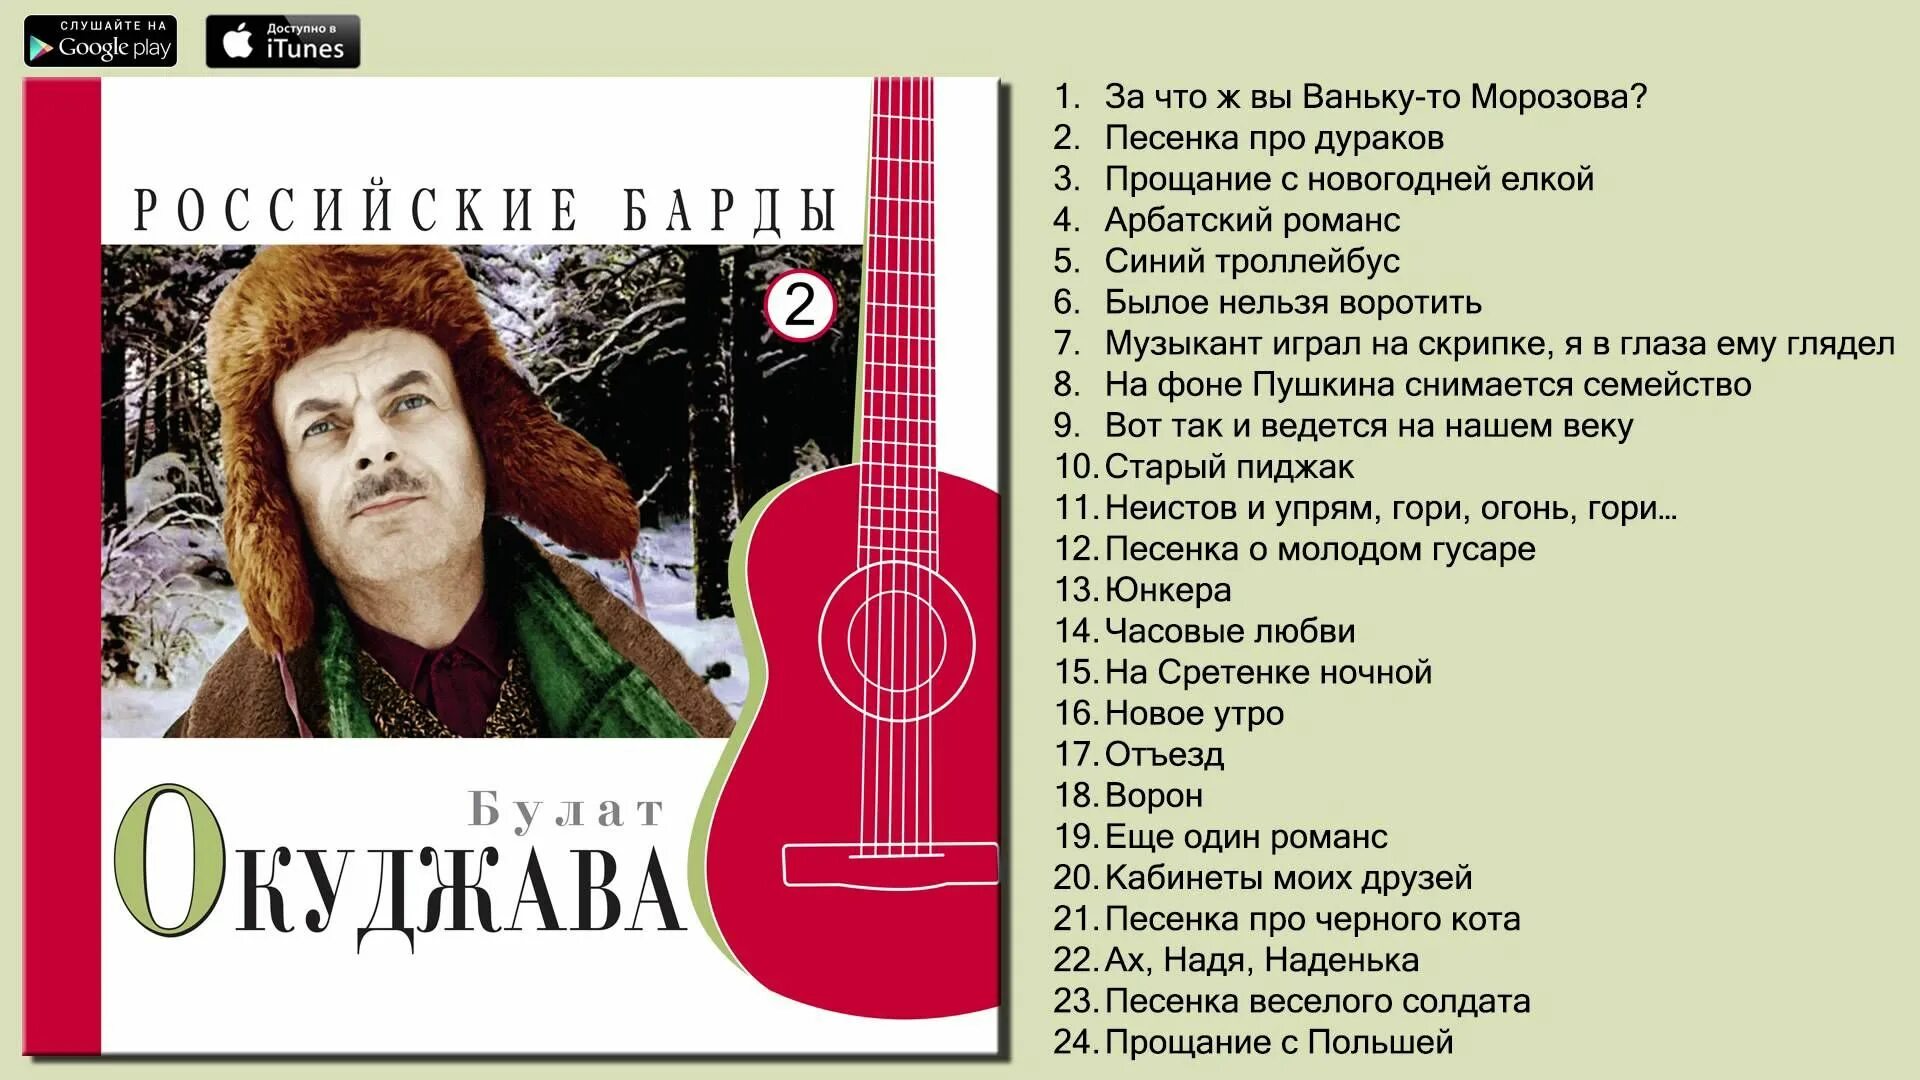 Окуджава самые известные песни. Российские барды Окуджава. Российские барды Окуджава 6. Песни Окуджавы список.